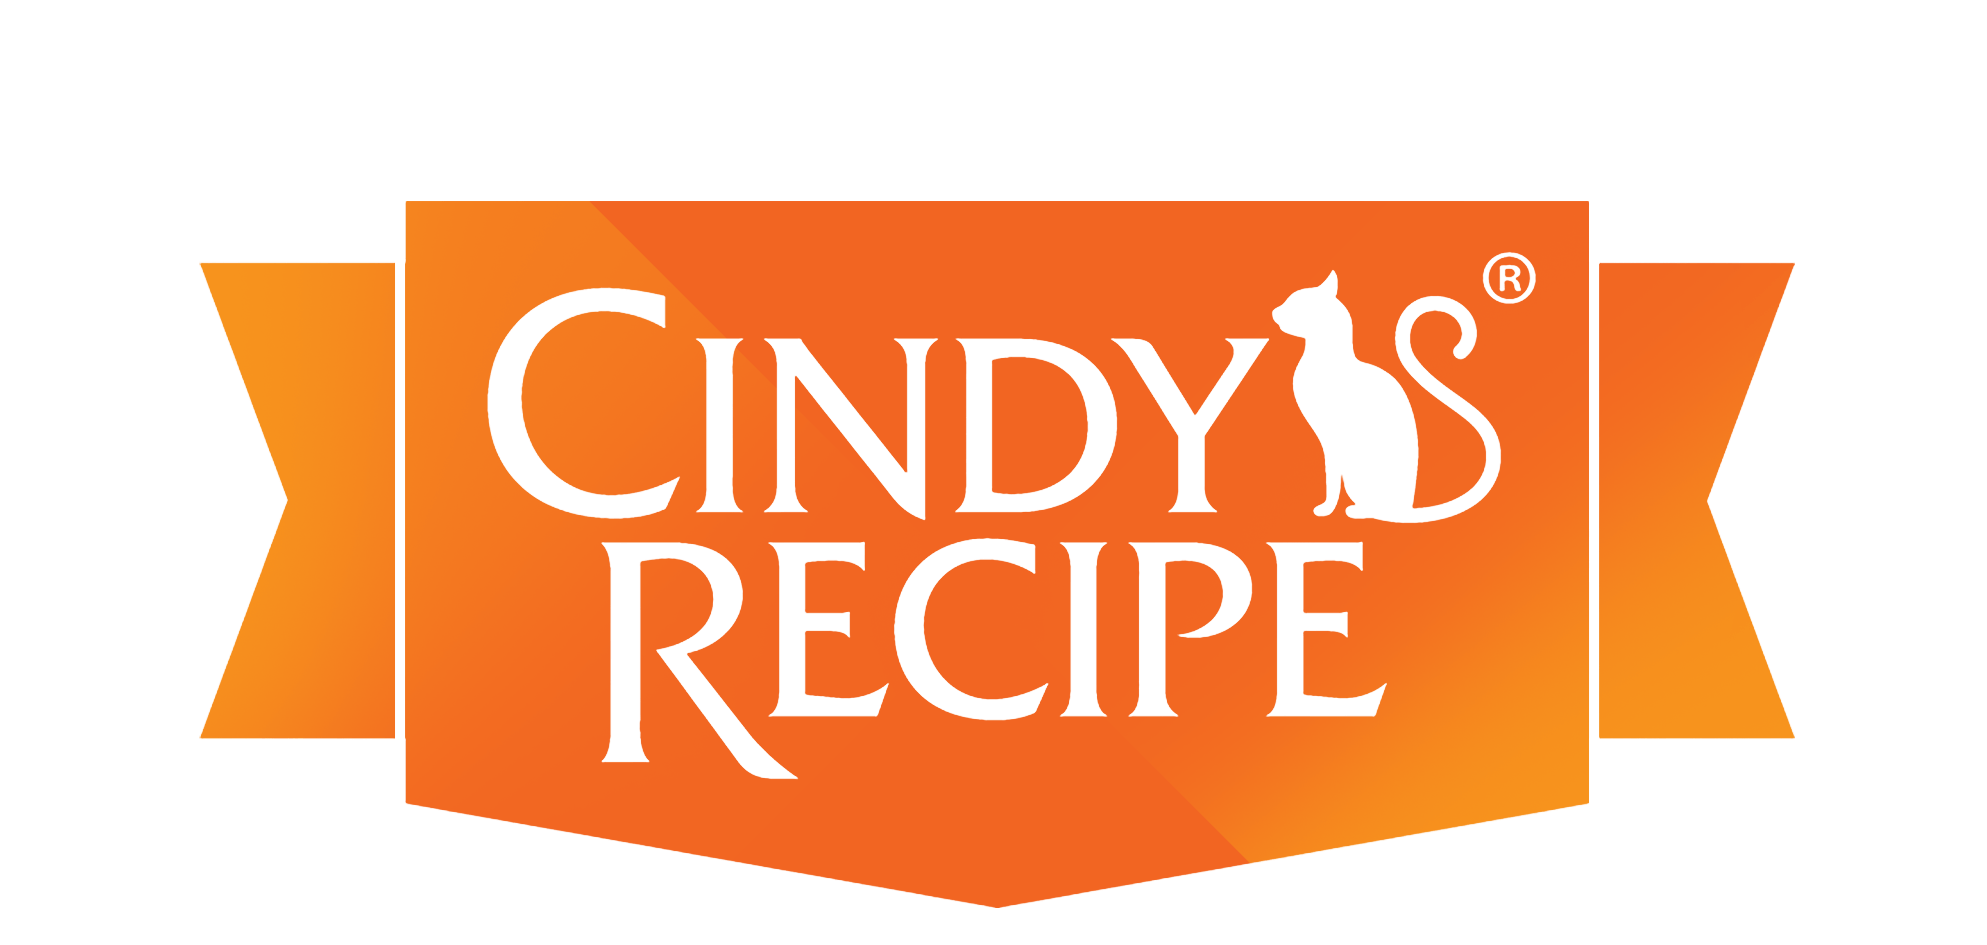 Recipe.com Logo - Cindy's Recipe – Nurturing With Care